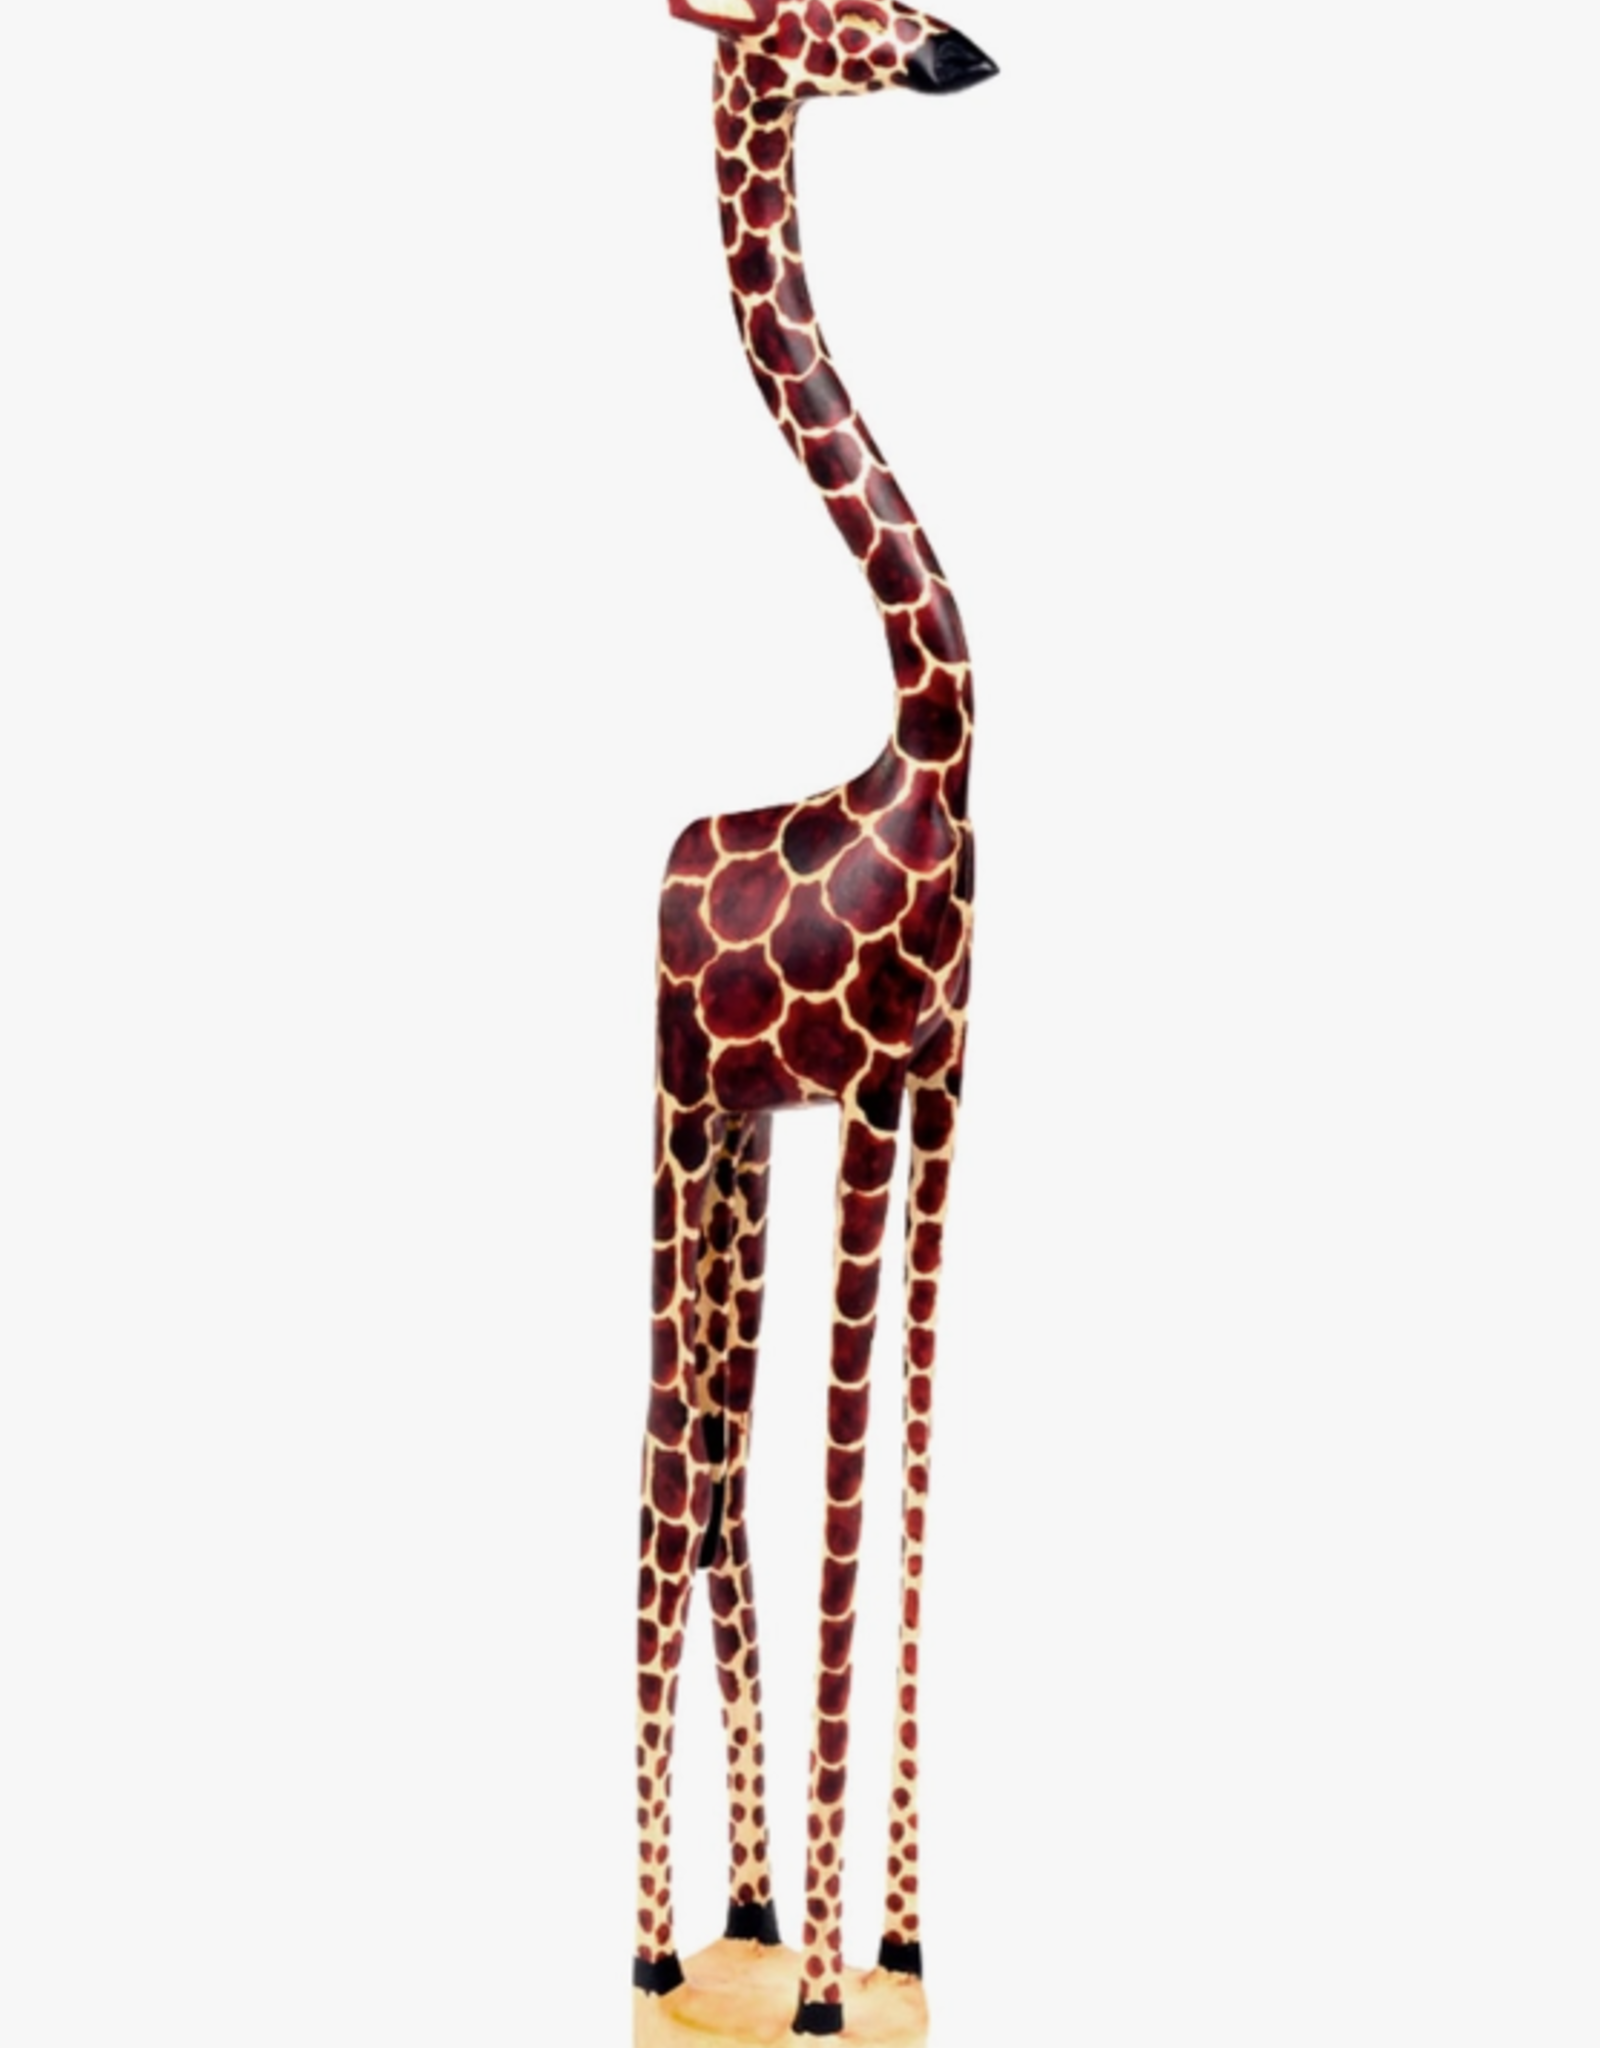 Swahili African Modern Large Long Leg Giraffe Sculpture - 17"